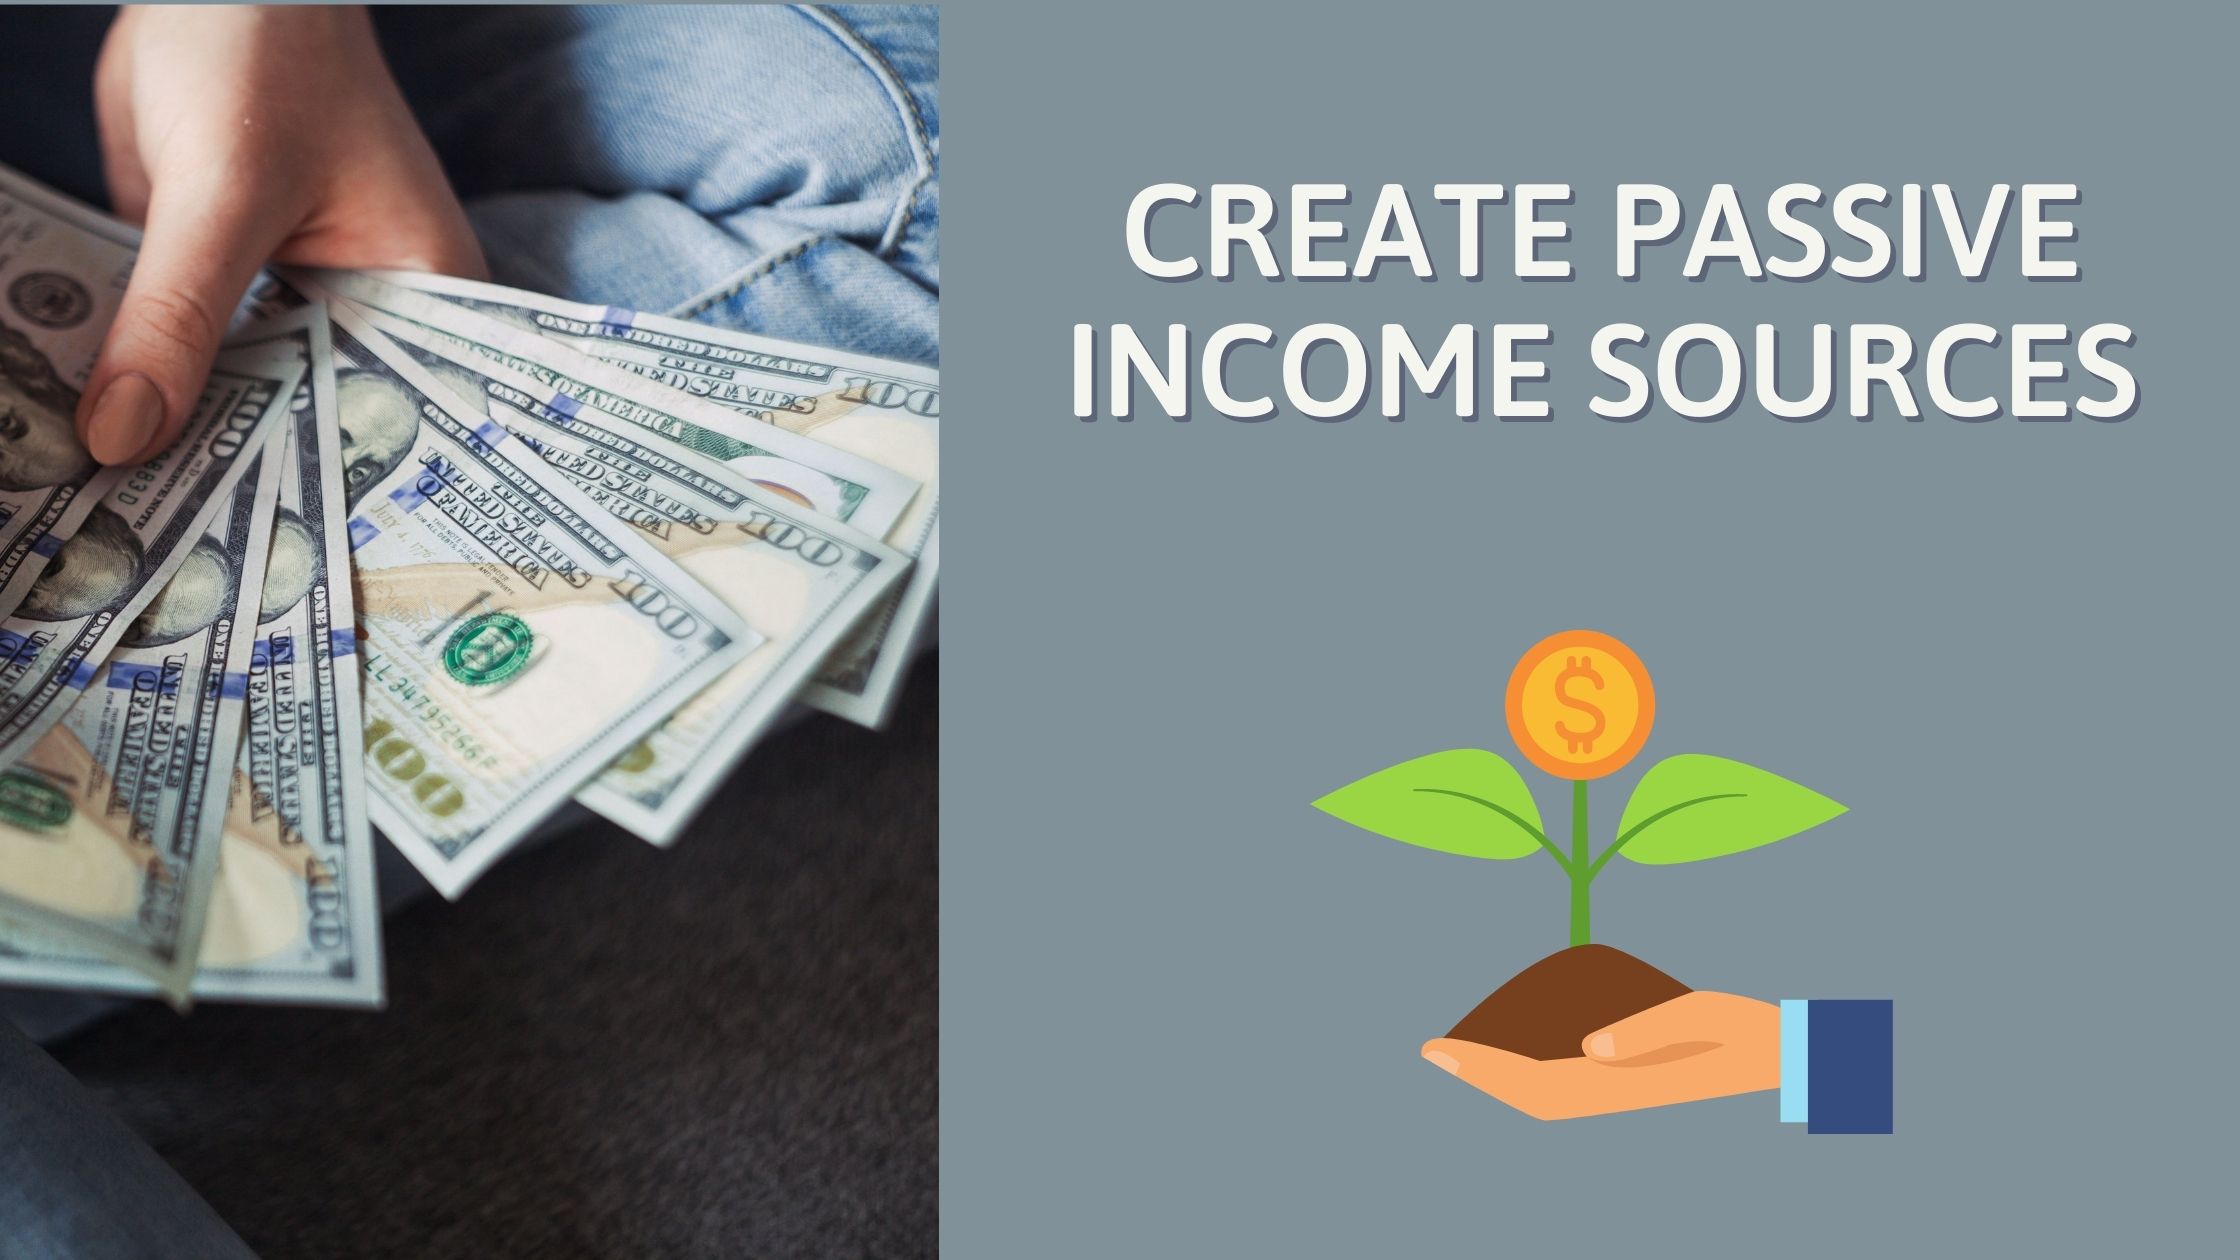 Create passive income sources